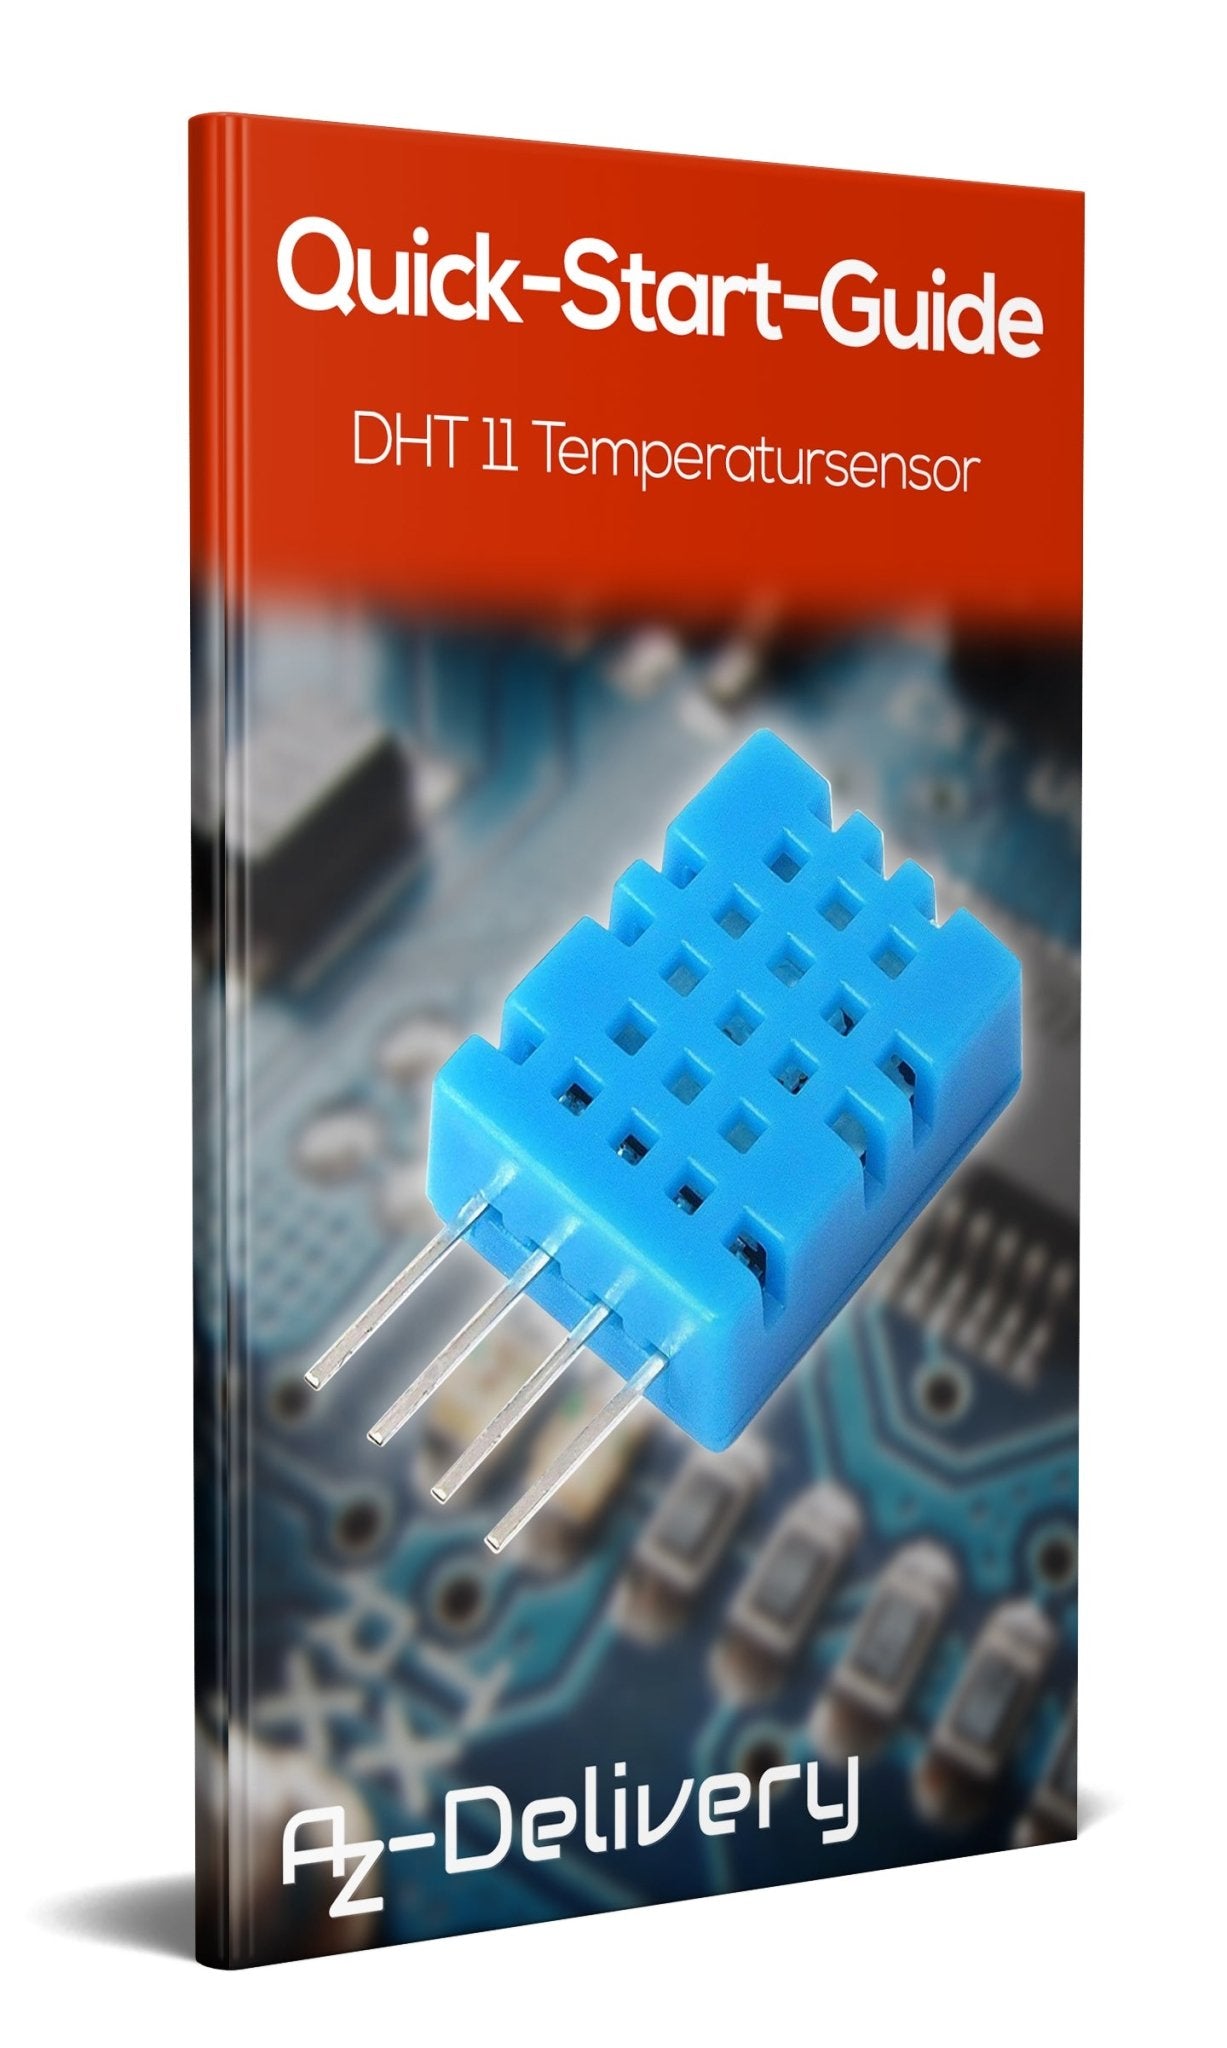 DHT11 Temperatursensor und Luftfeuchtigkeitssensor - AZ-Delivery